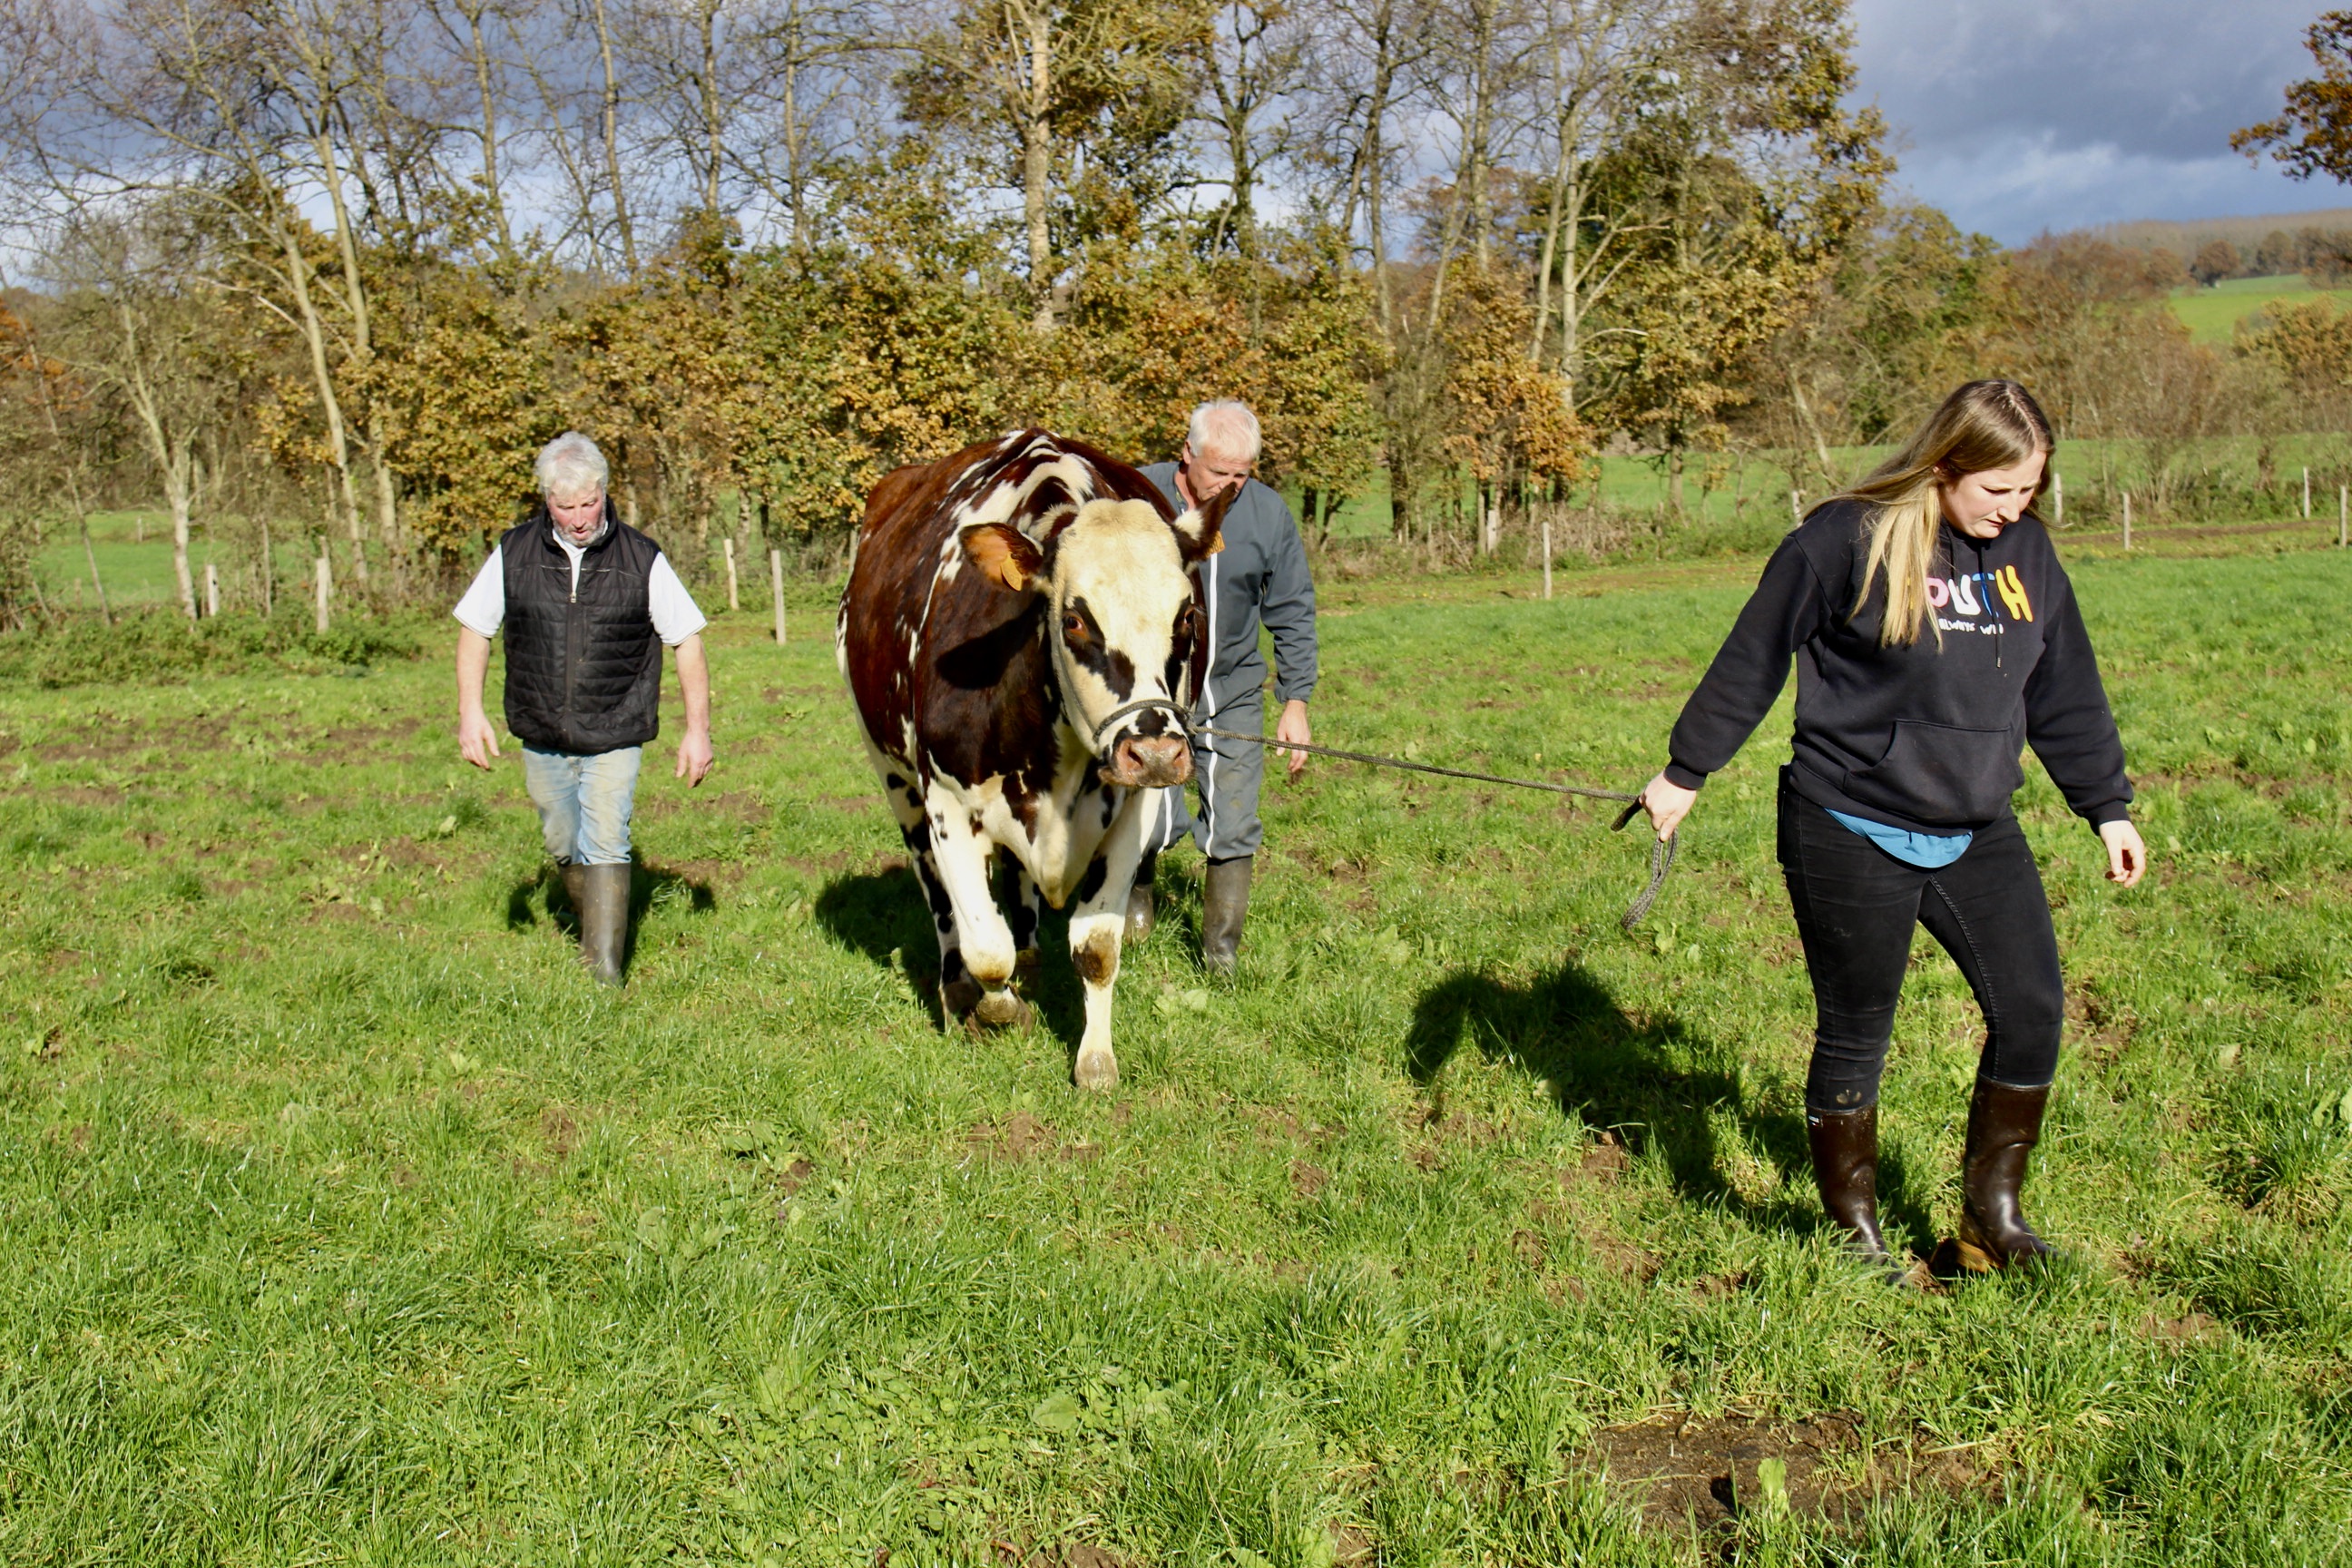 Voici Oreillette, une vache normande et future égérie du Salon de  l'agriculture 2024